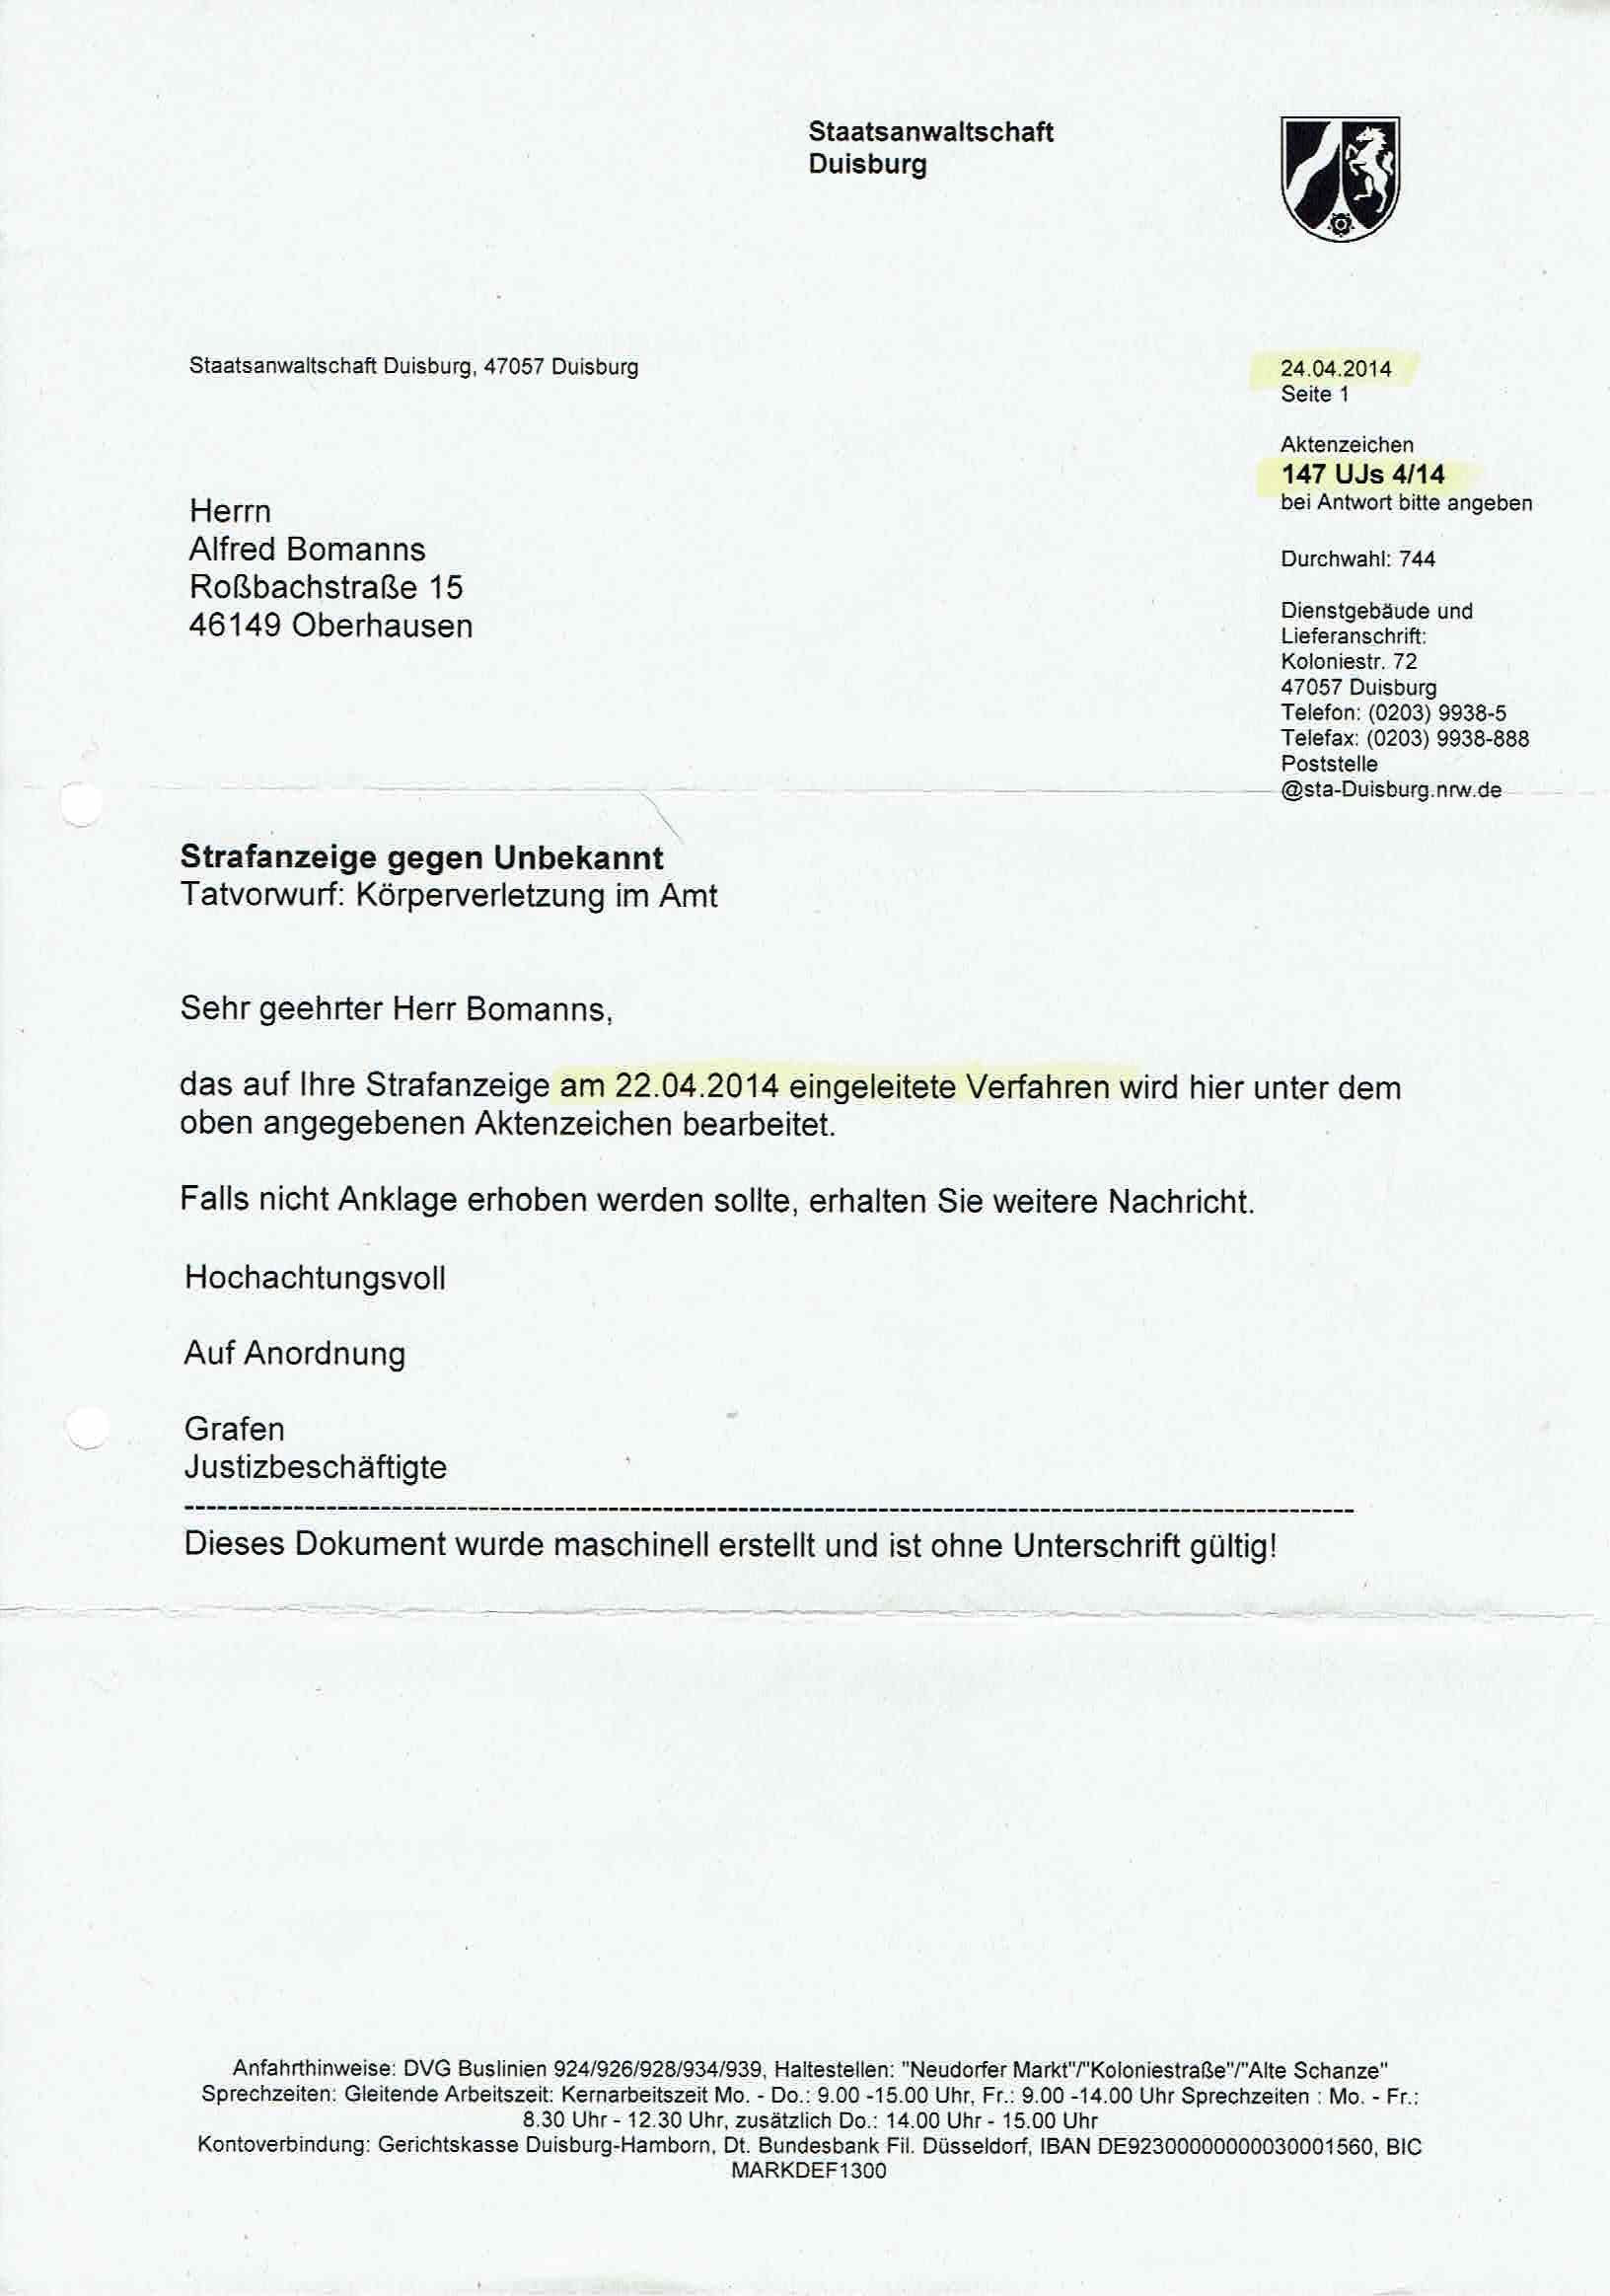 Antwort der Staatsanwaltschaft Duisburg vom 24.04.2014